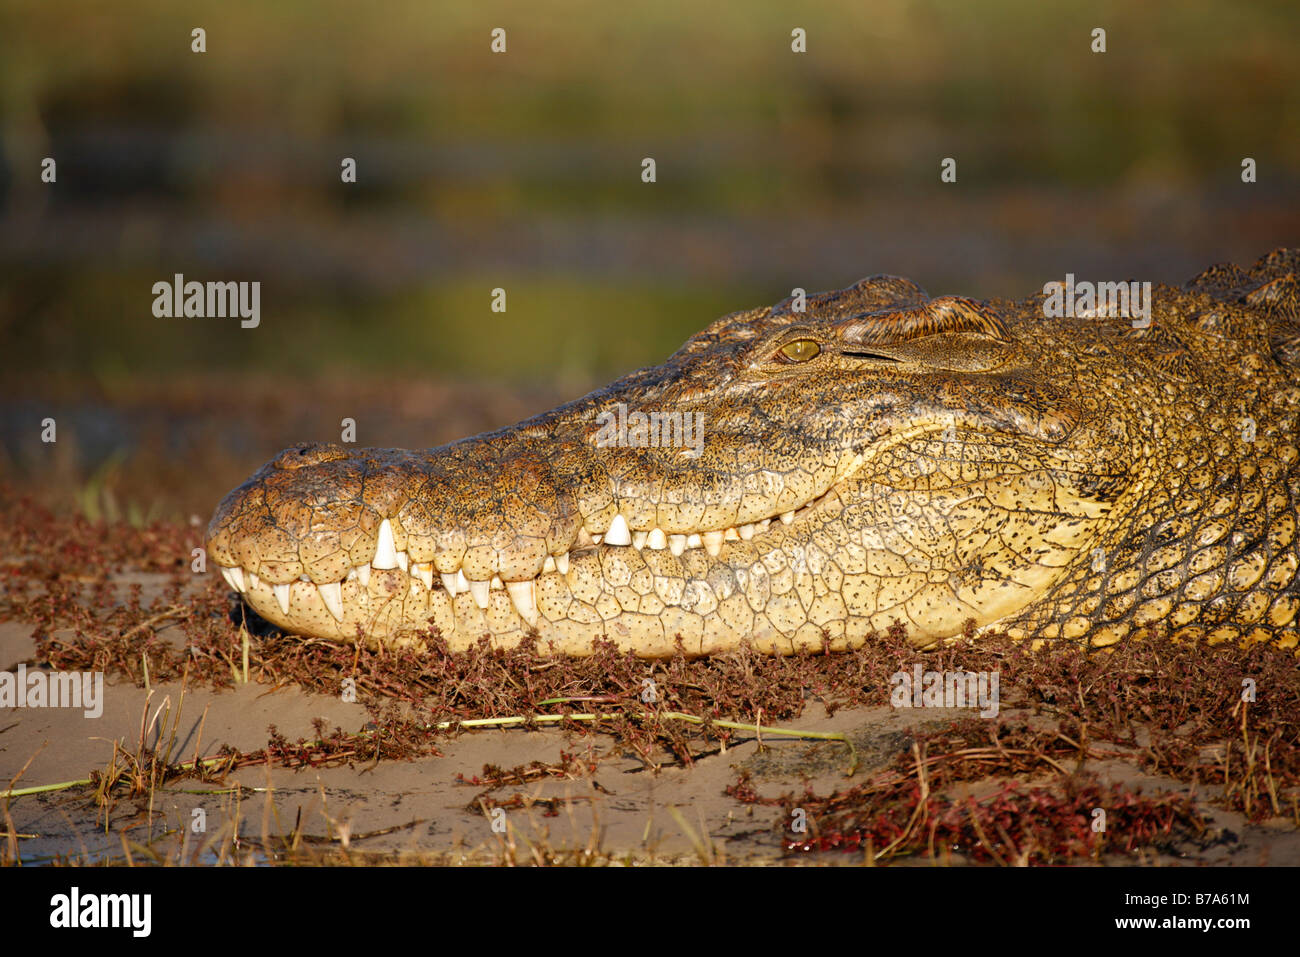 Retrato de un cocodrilo del Nilo asoleándose en un arenal Foto de stock